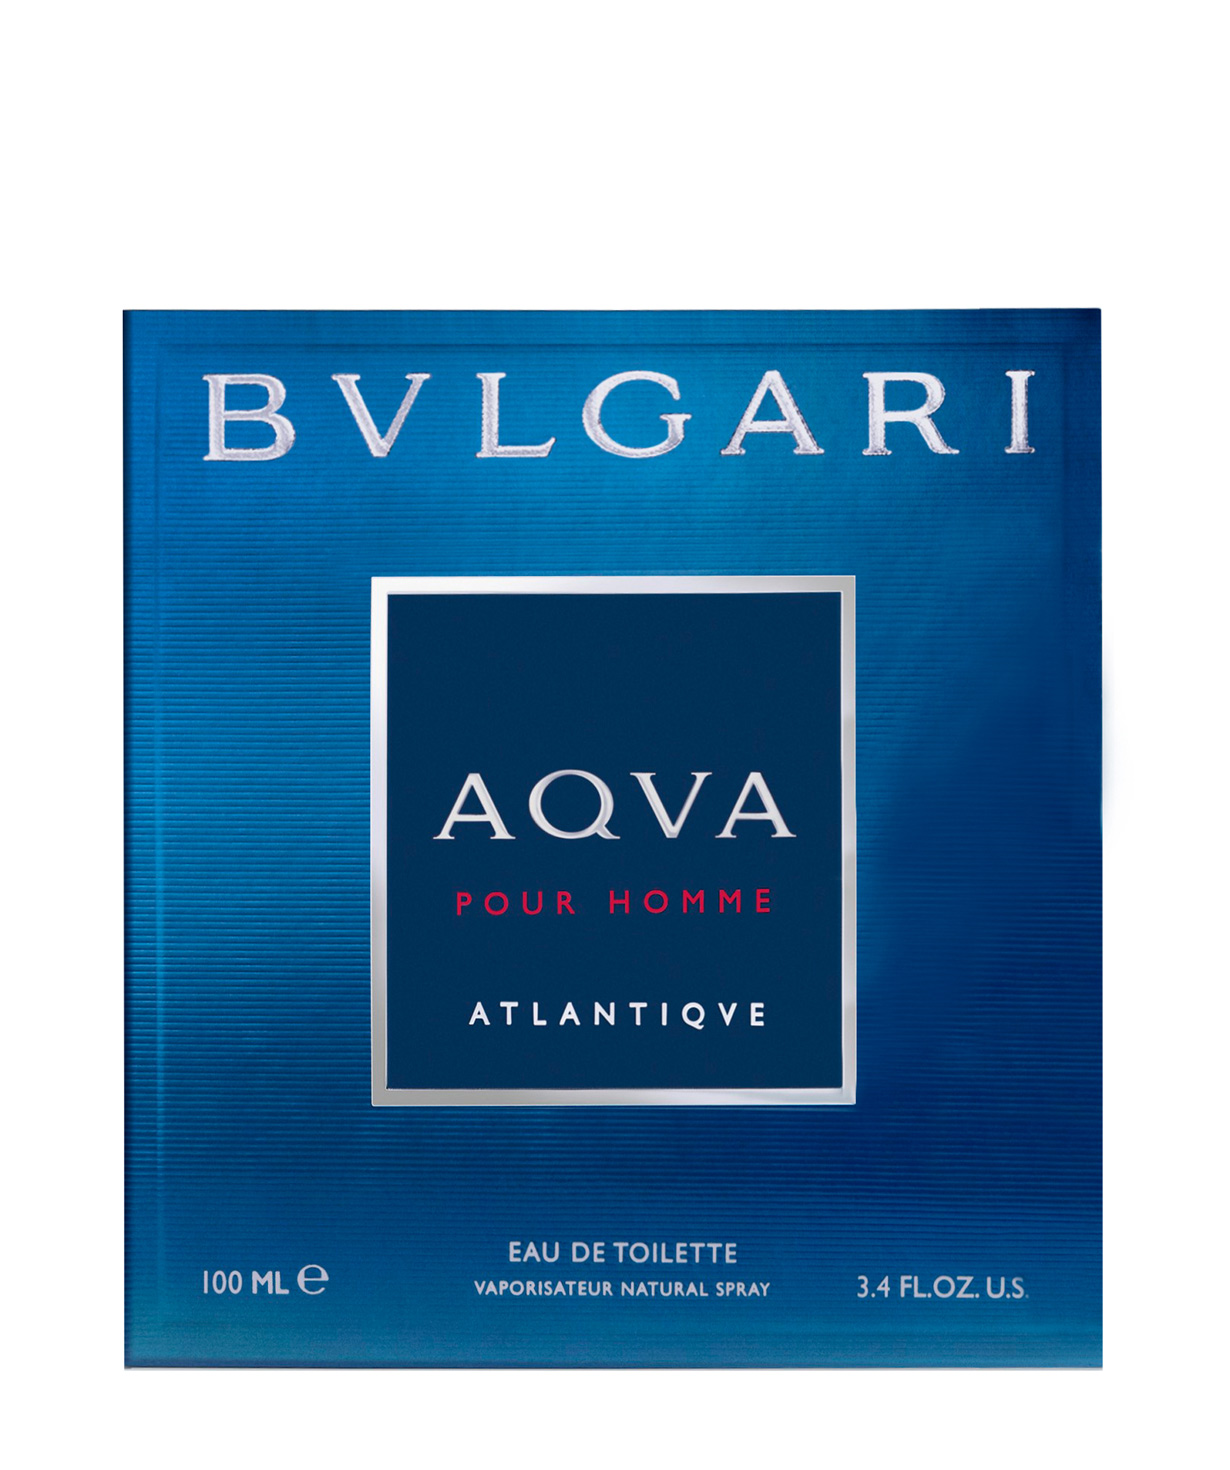 Օծանելիք «BVLGARI» Aqva Atlantiqve, 100 մլ